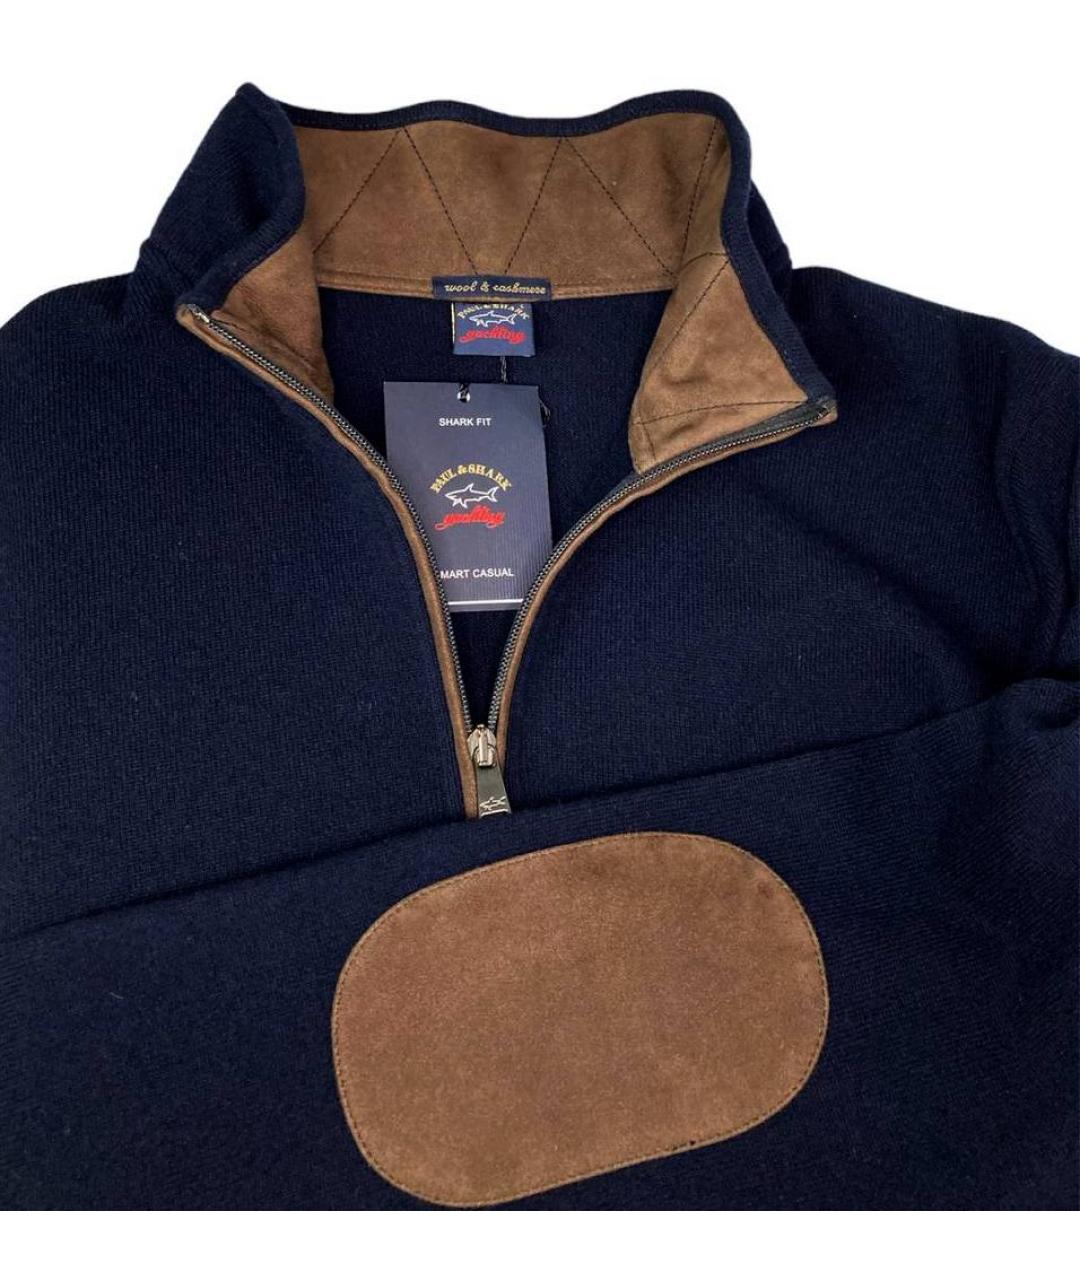 PAUL & SHARK Темно-синий кашемировый джемпер / свитер, фото 3